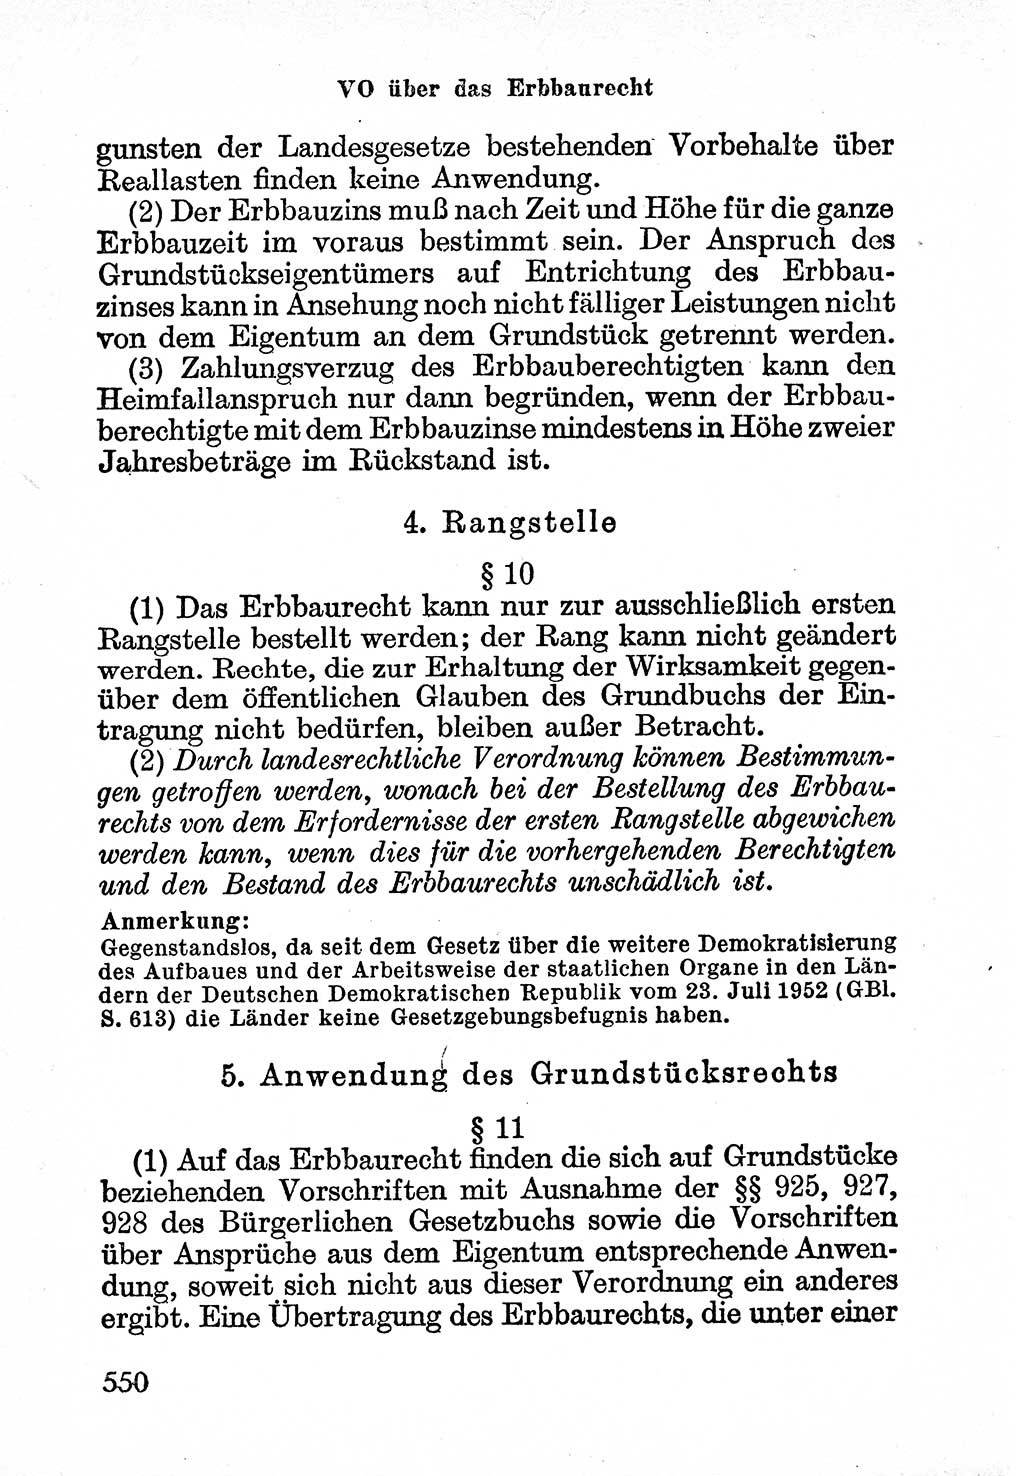 Bürgerliches Gesetzbuch (BGB) nebst wichtigen Nebengesetzen [Deutsche Demokratische Republik (DDR)] 1956, Seite 550 (BGB Nebenges. DDR 1956, S. 550)